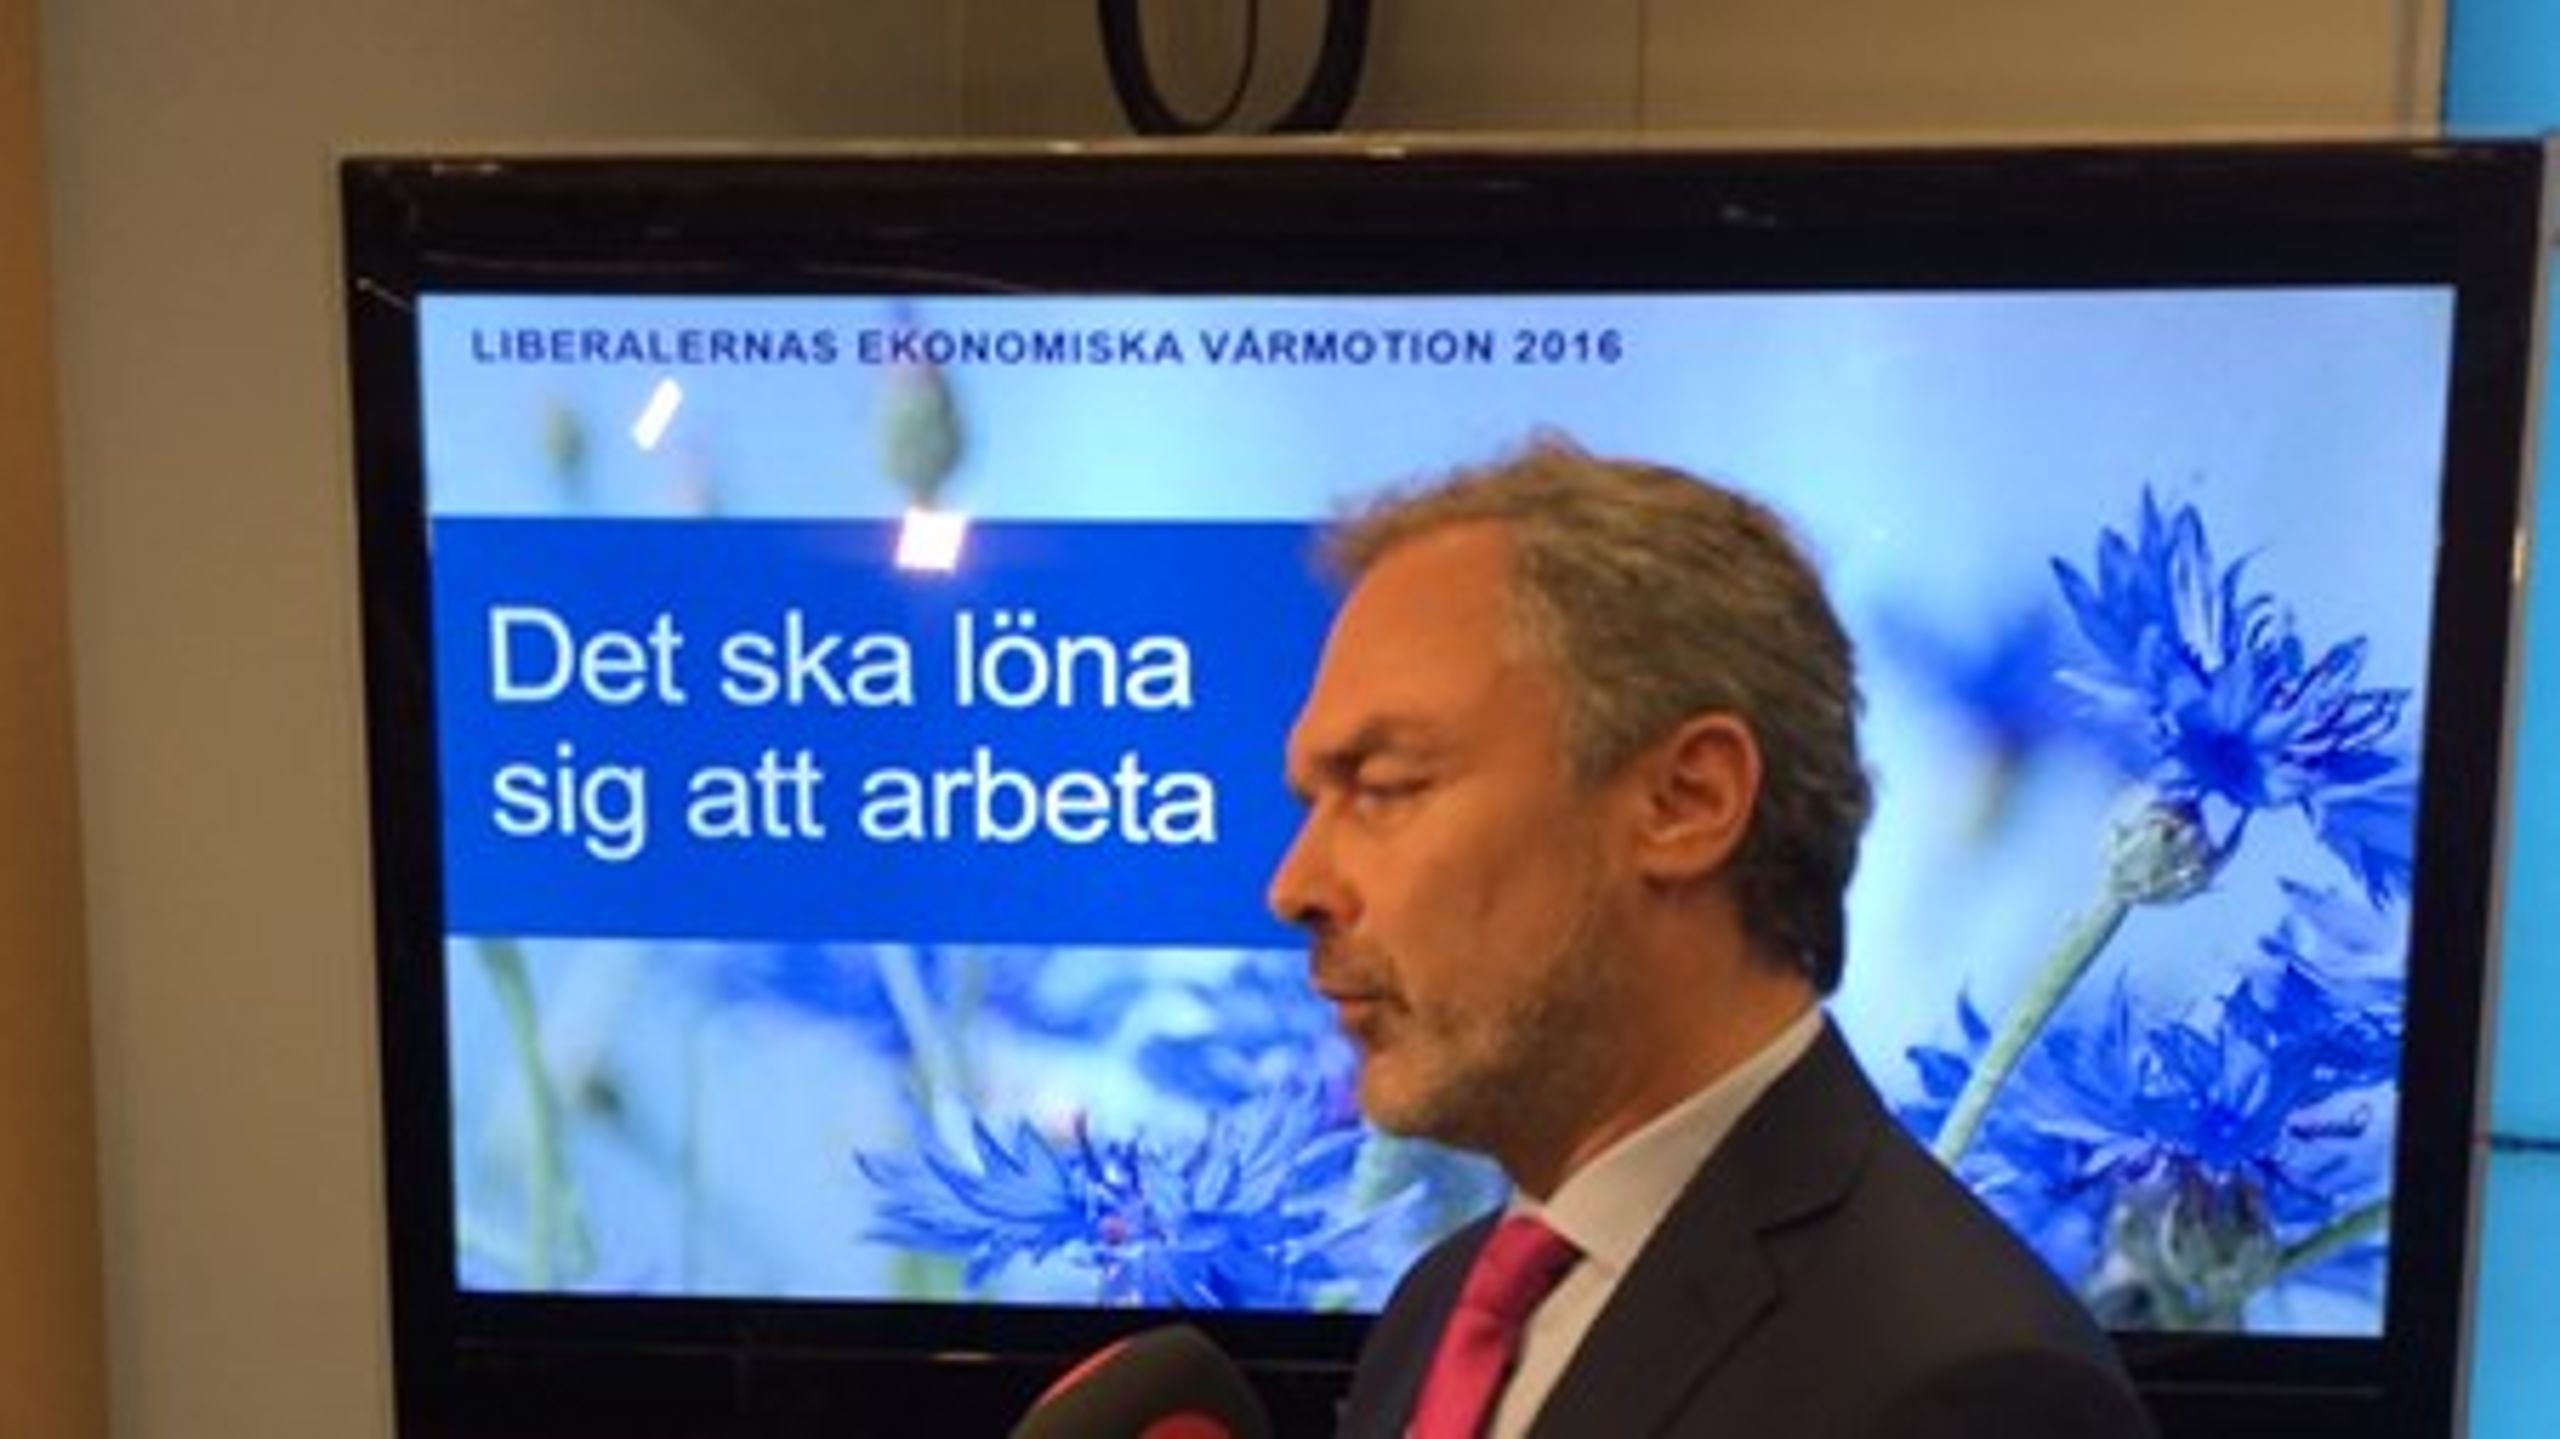 Lägre skatter ska leda till fler jobb, enligt Liberalernas&nbsp;partiledare Jan Björklund.